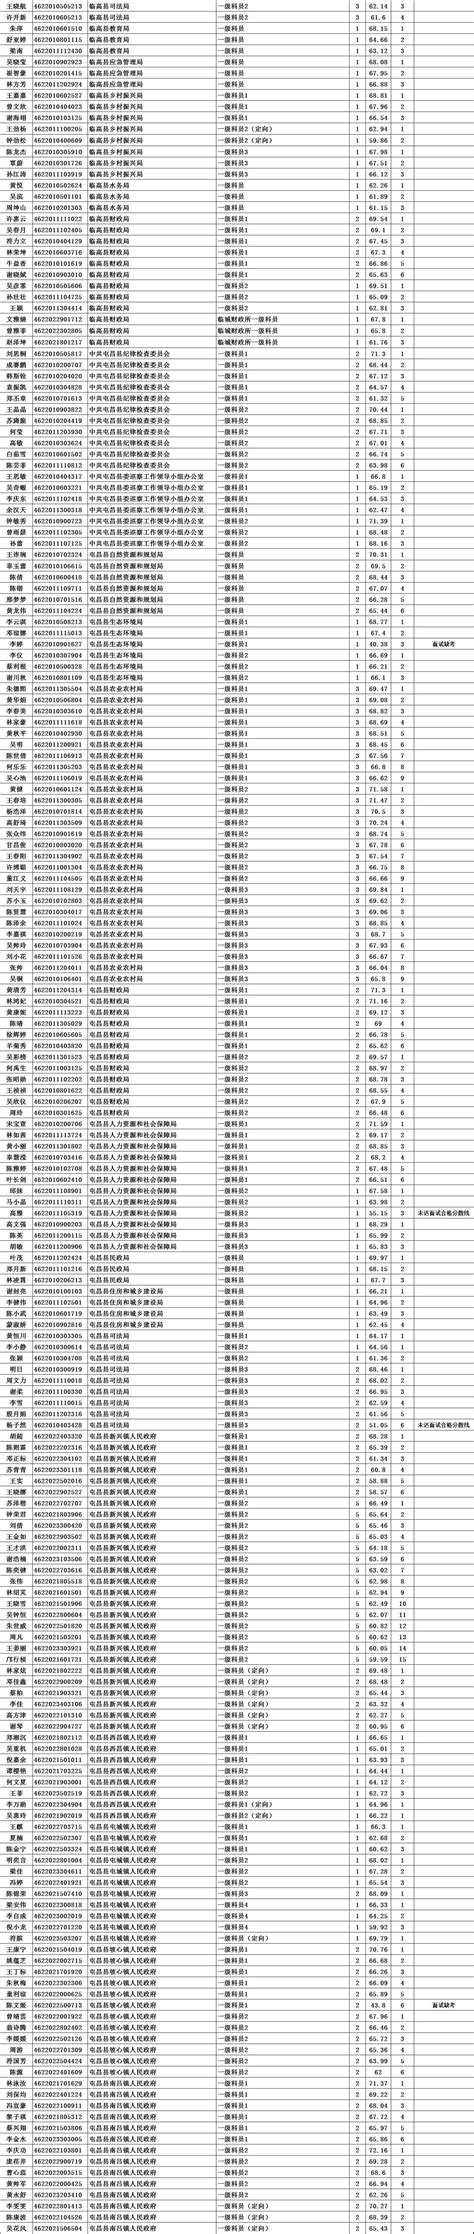 宜宾市地税局2011年公招面试成绩排名表_文档下载